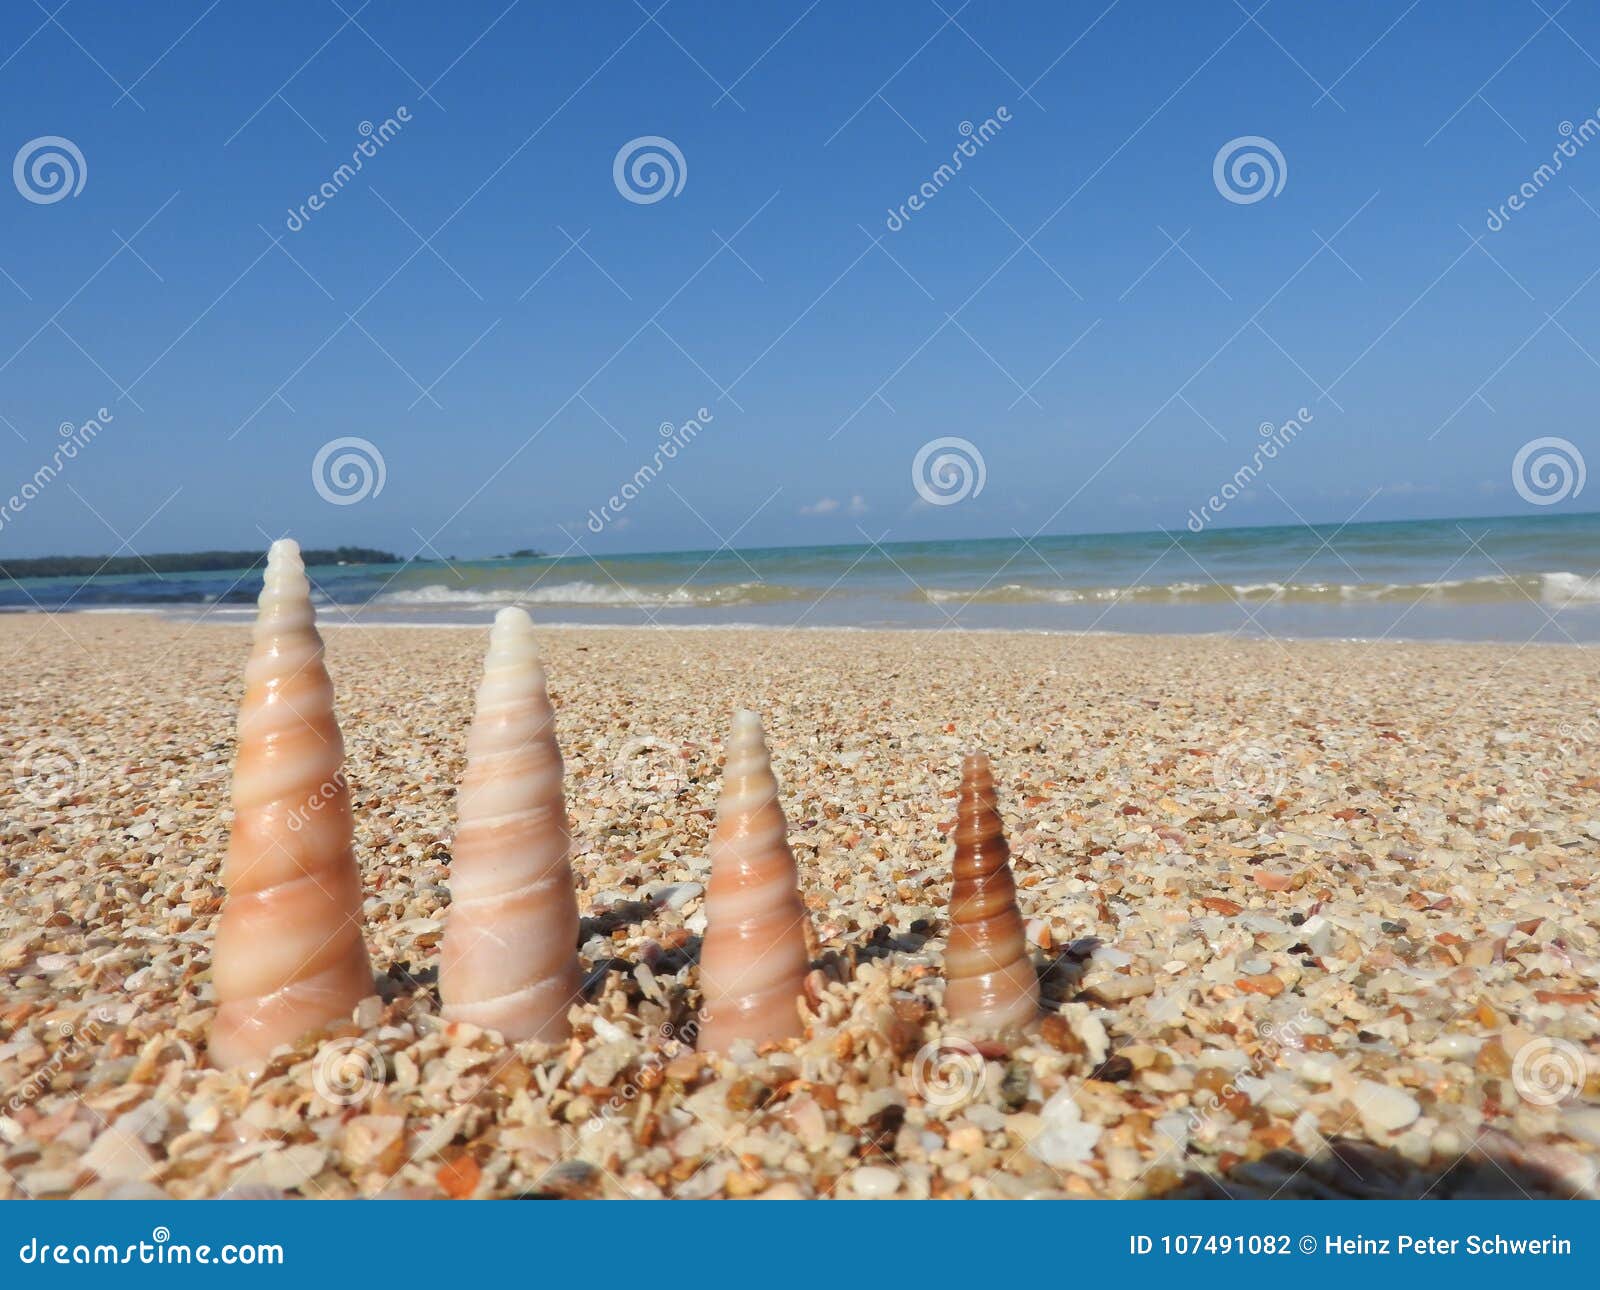 seashell on the sandy beach